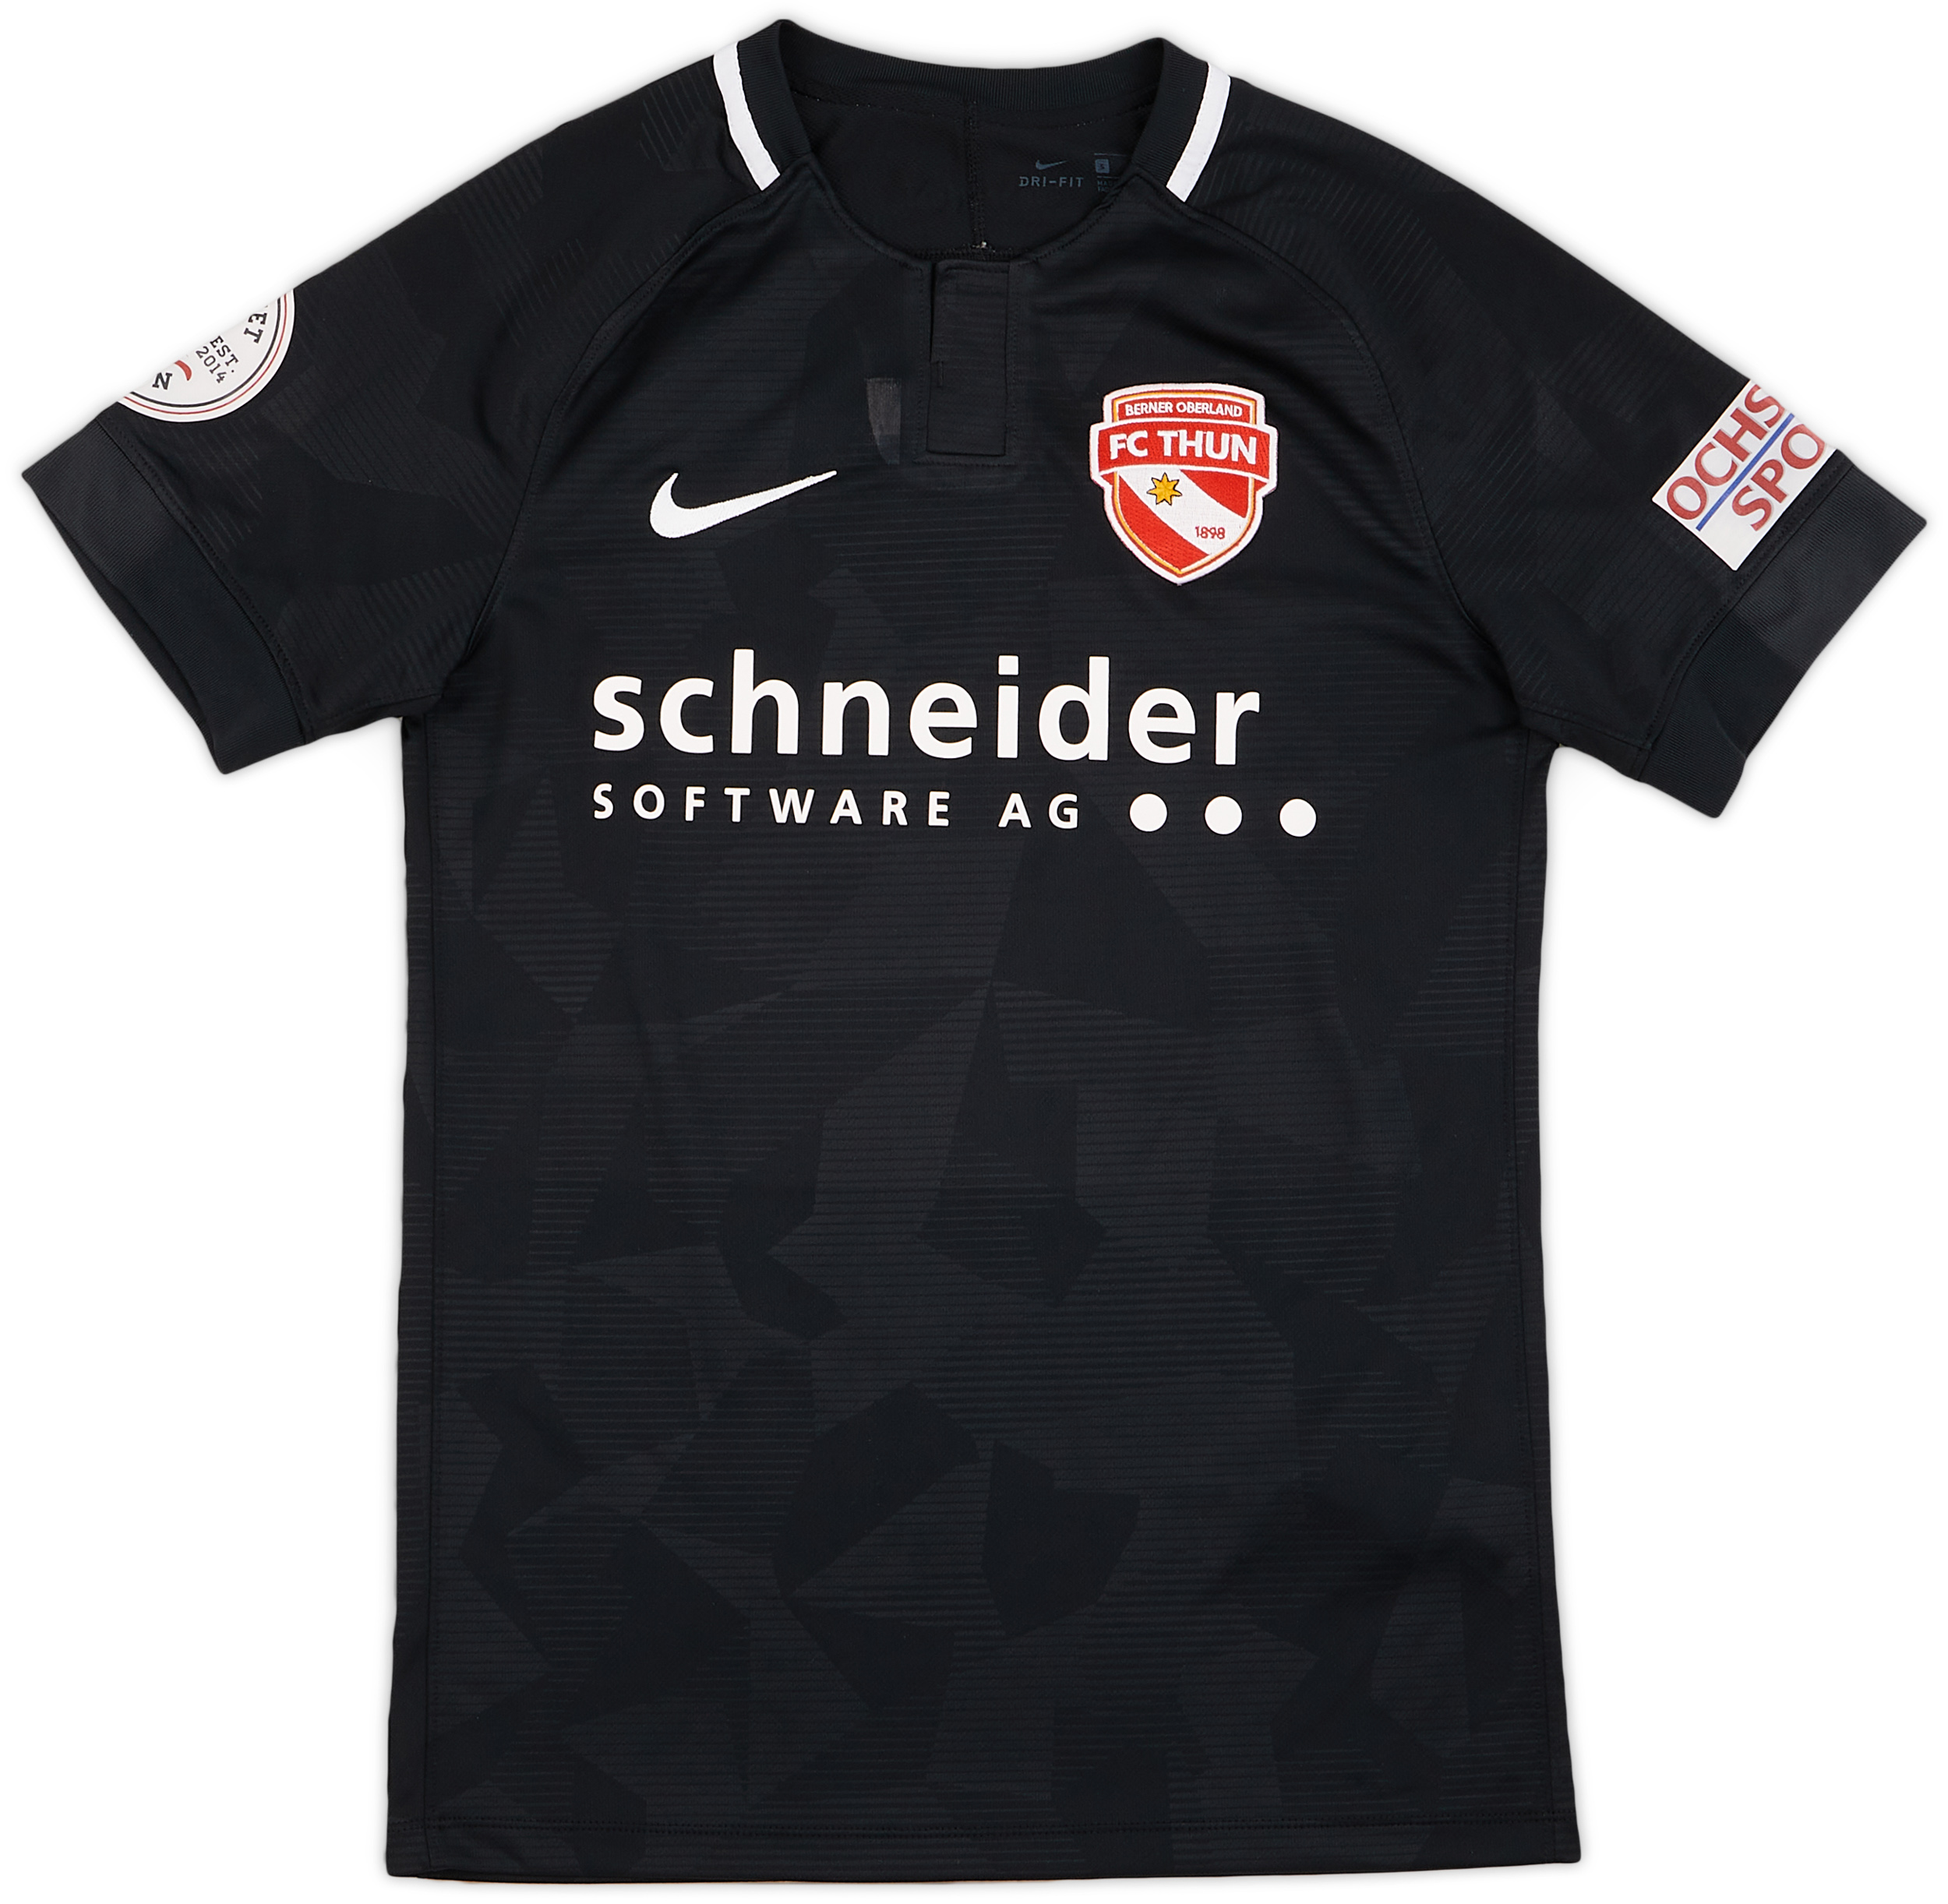 2018-19 FC Thun Away Shirt - 6/10 - ()